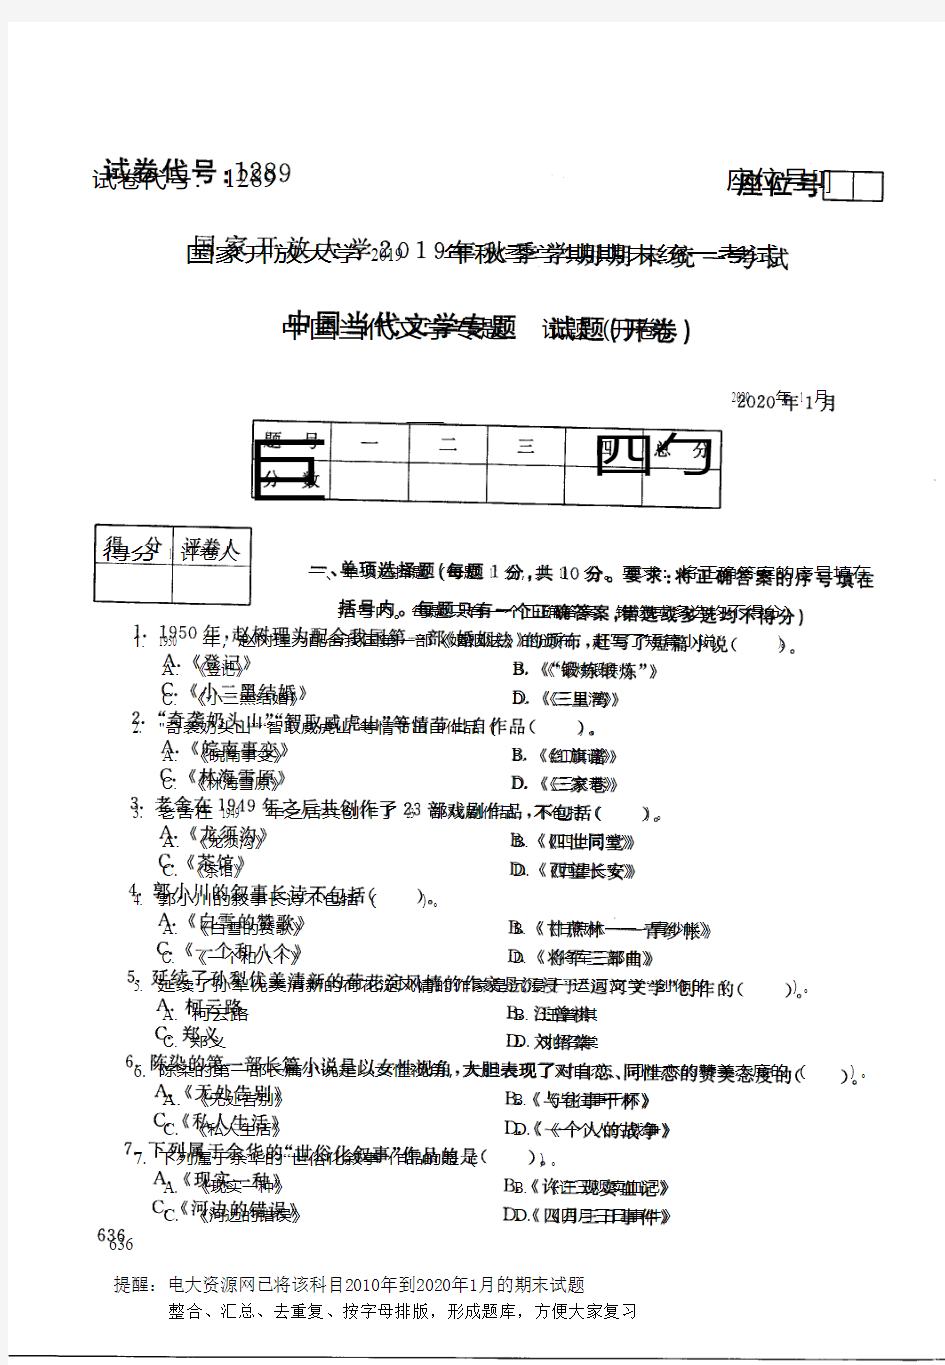 电大1289《中国当代文学专题》开放大学期末考试历届试题2020年1月(含答案)